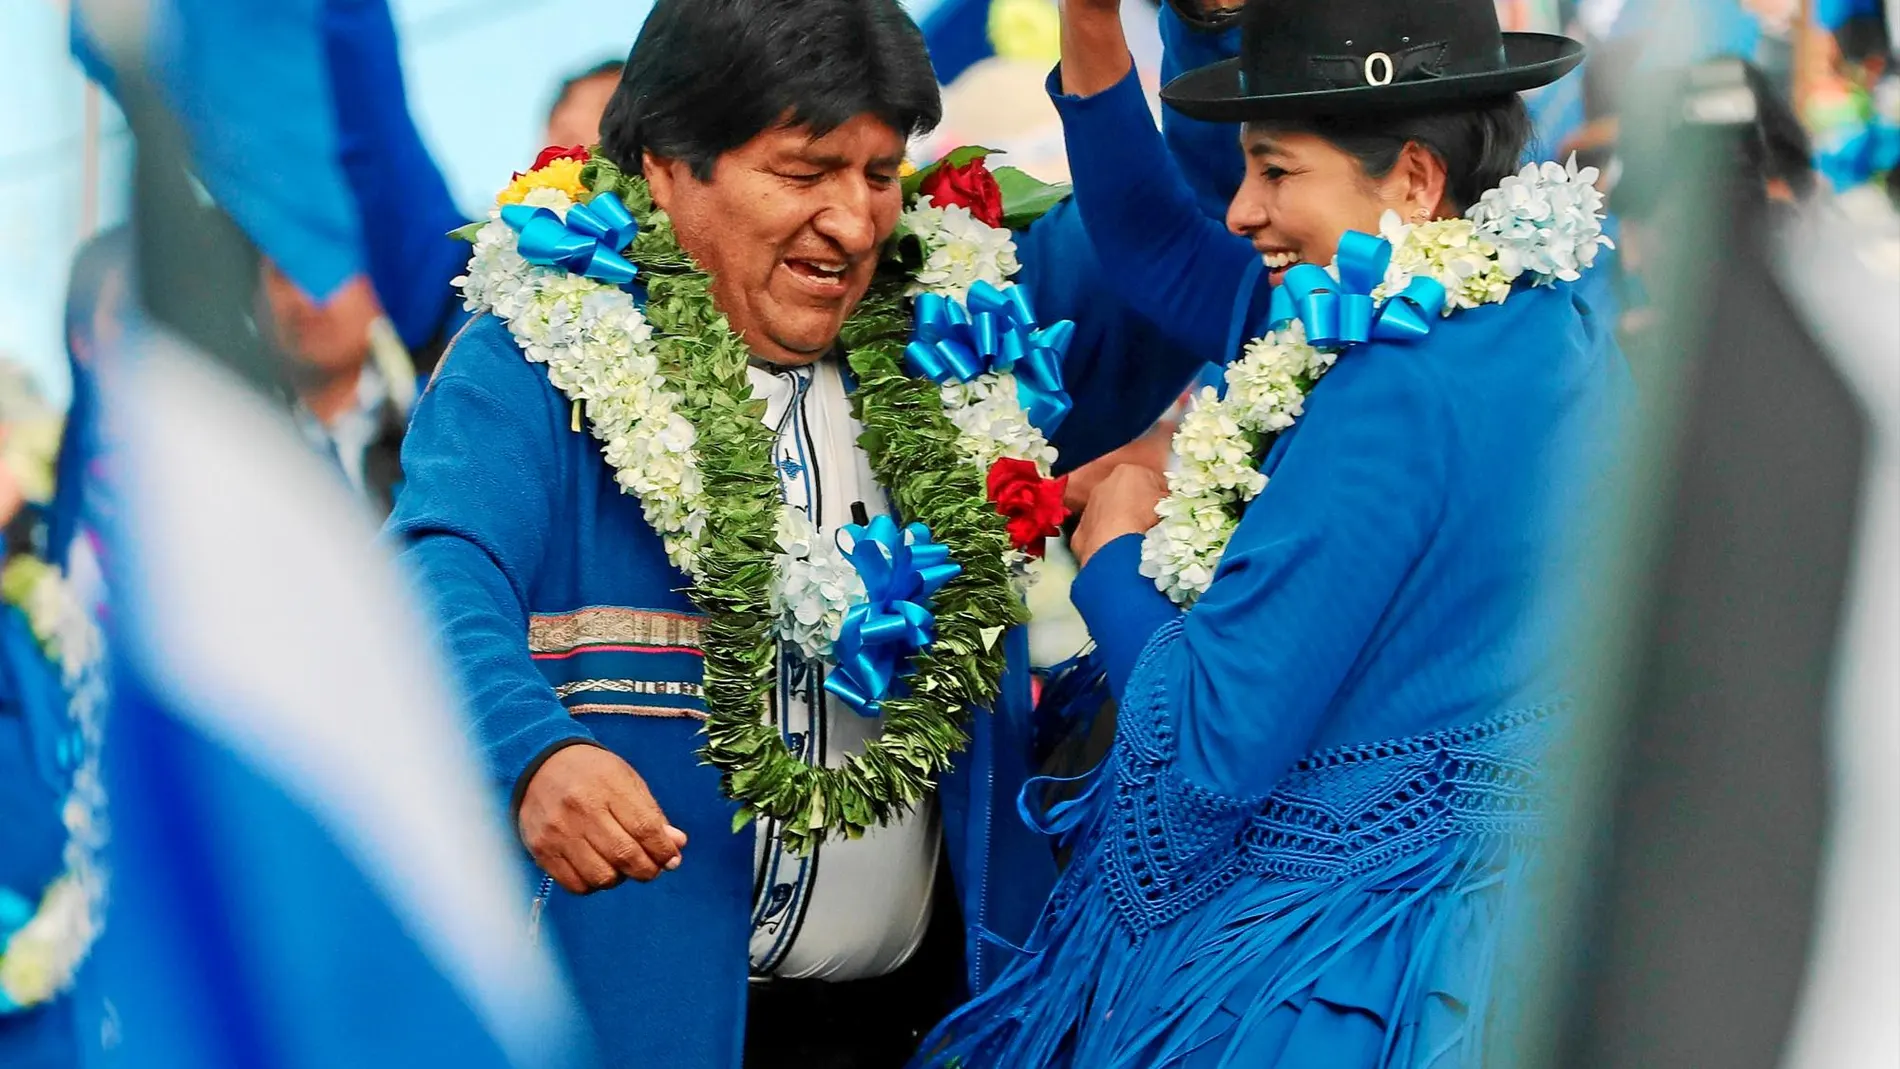 El ex líder cocalero, Evo Morales, en un acto del cierre de la campaña electoral para un cuarto mandato